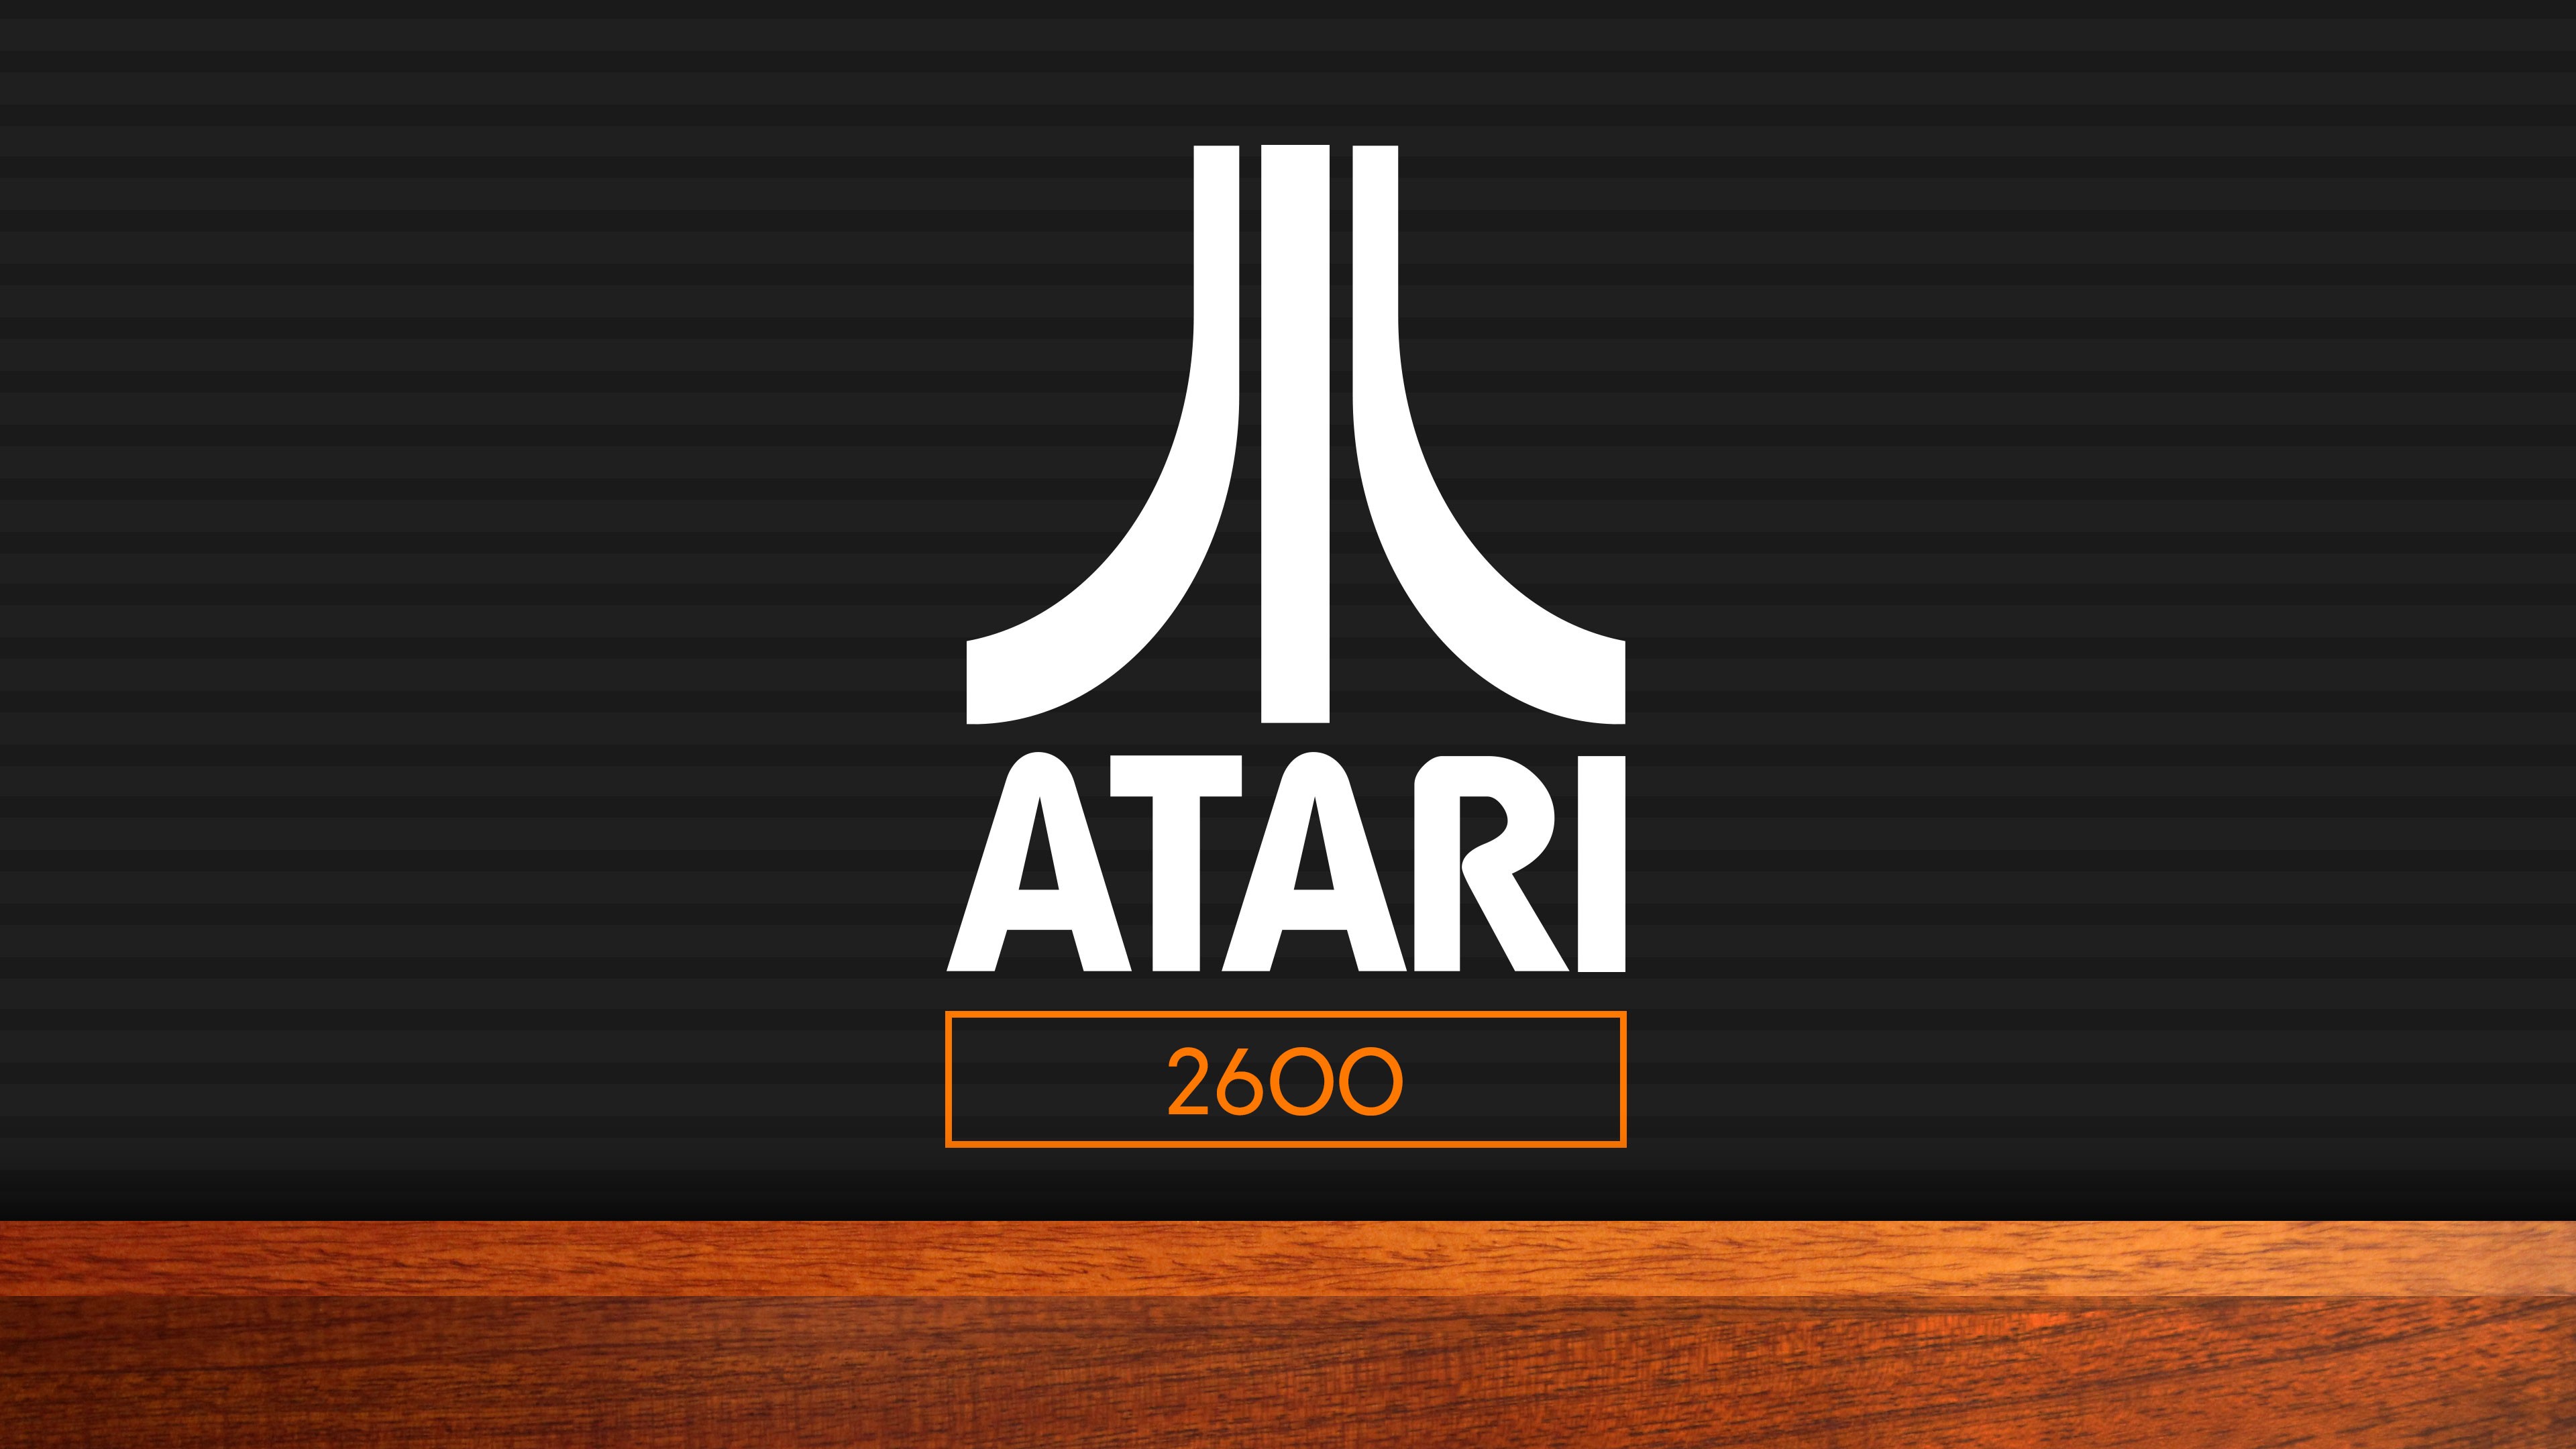 atari, video game, minimalist, consoles